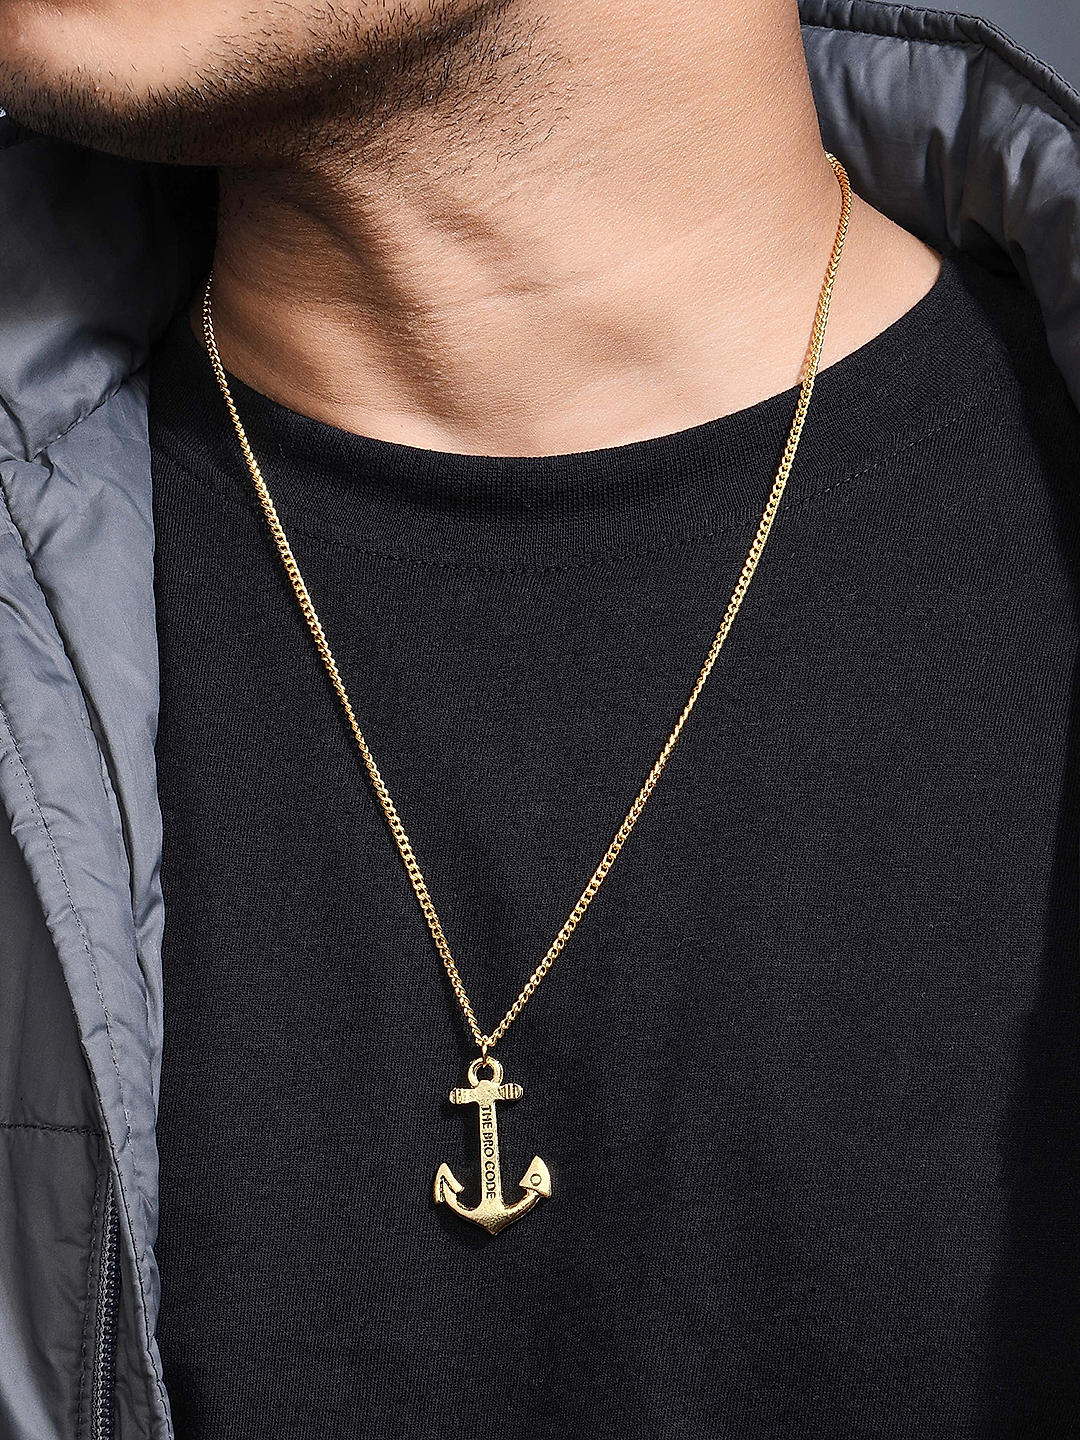 Anchor Pendant - Gold | Anchor pendant gold, Anchor necklace gold, Anchor  necklace